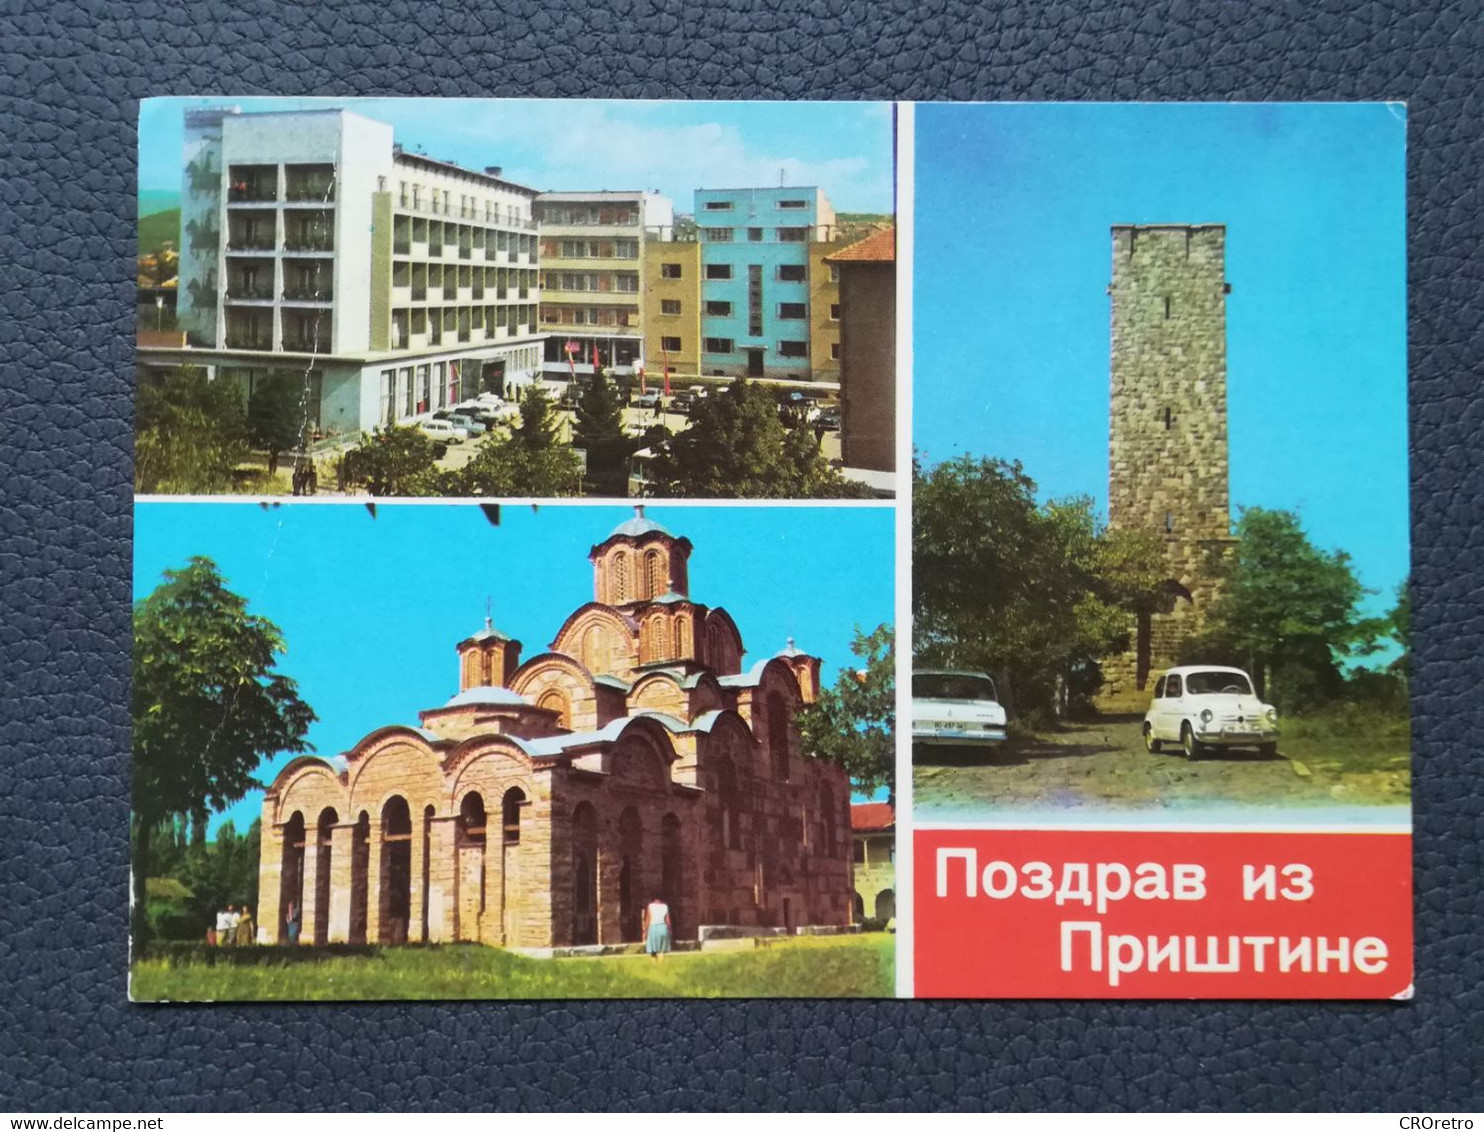 PRIŠTINA KOSOVO Postcards Traveled 1981  (Y2) - Kosovo